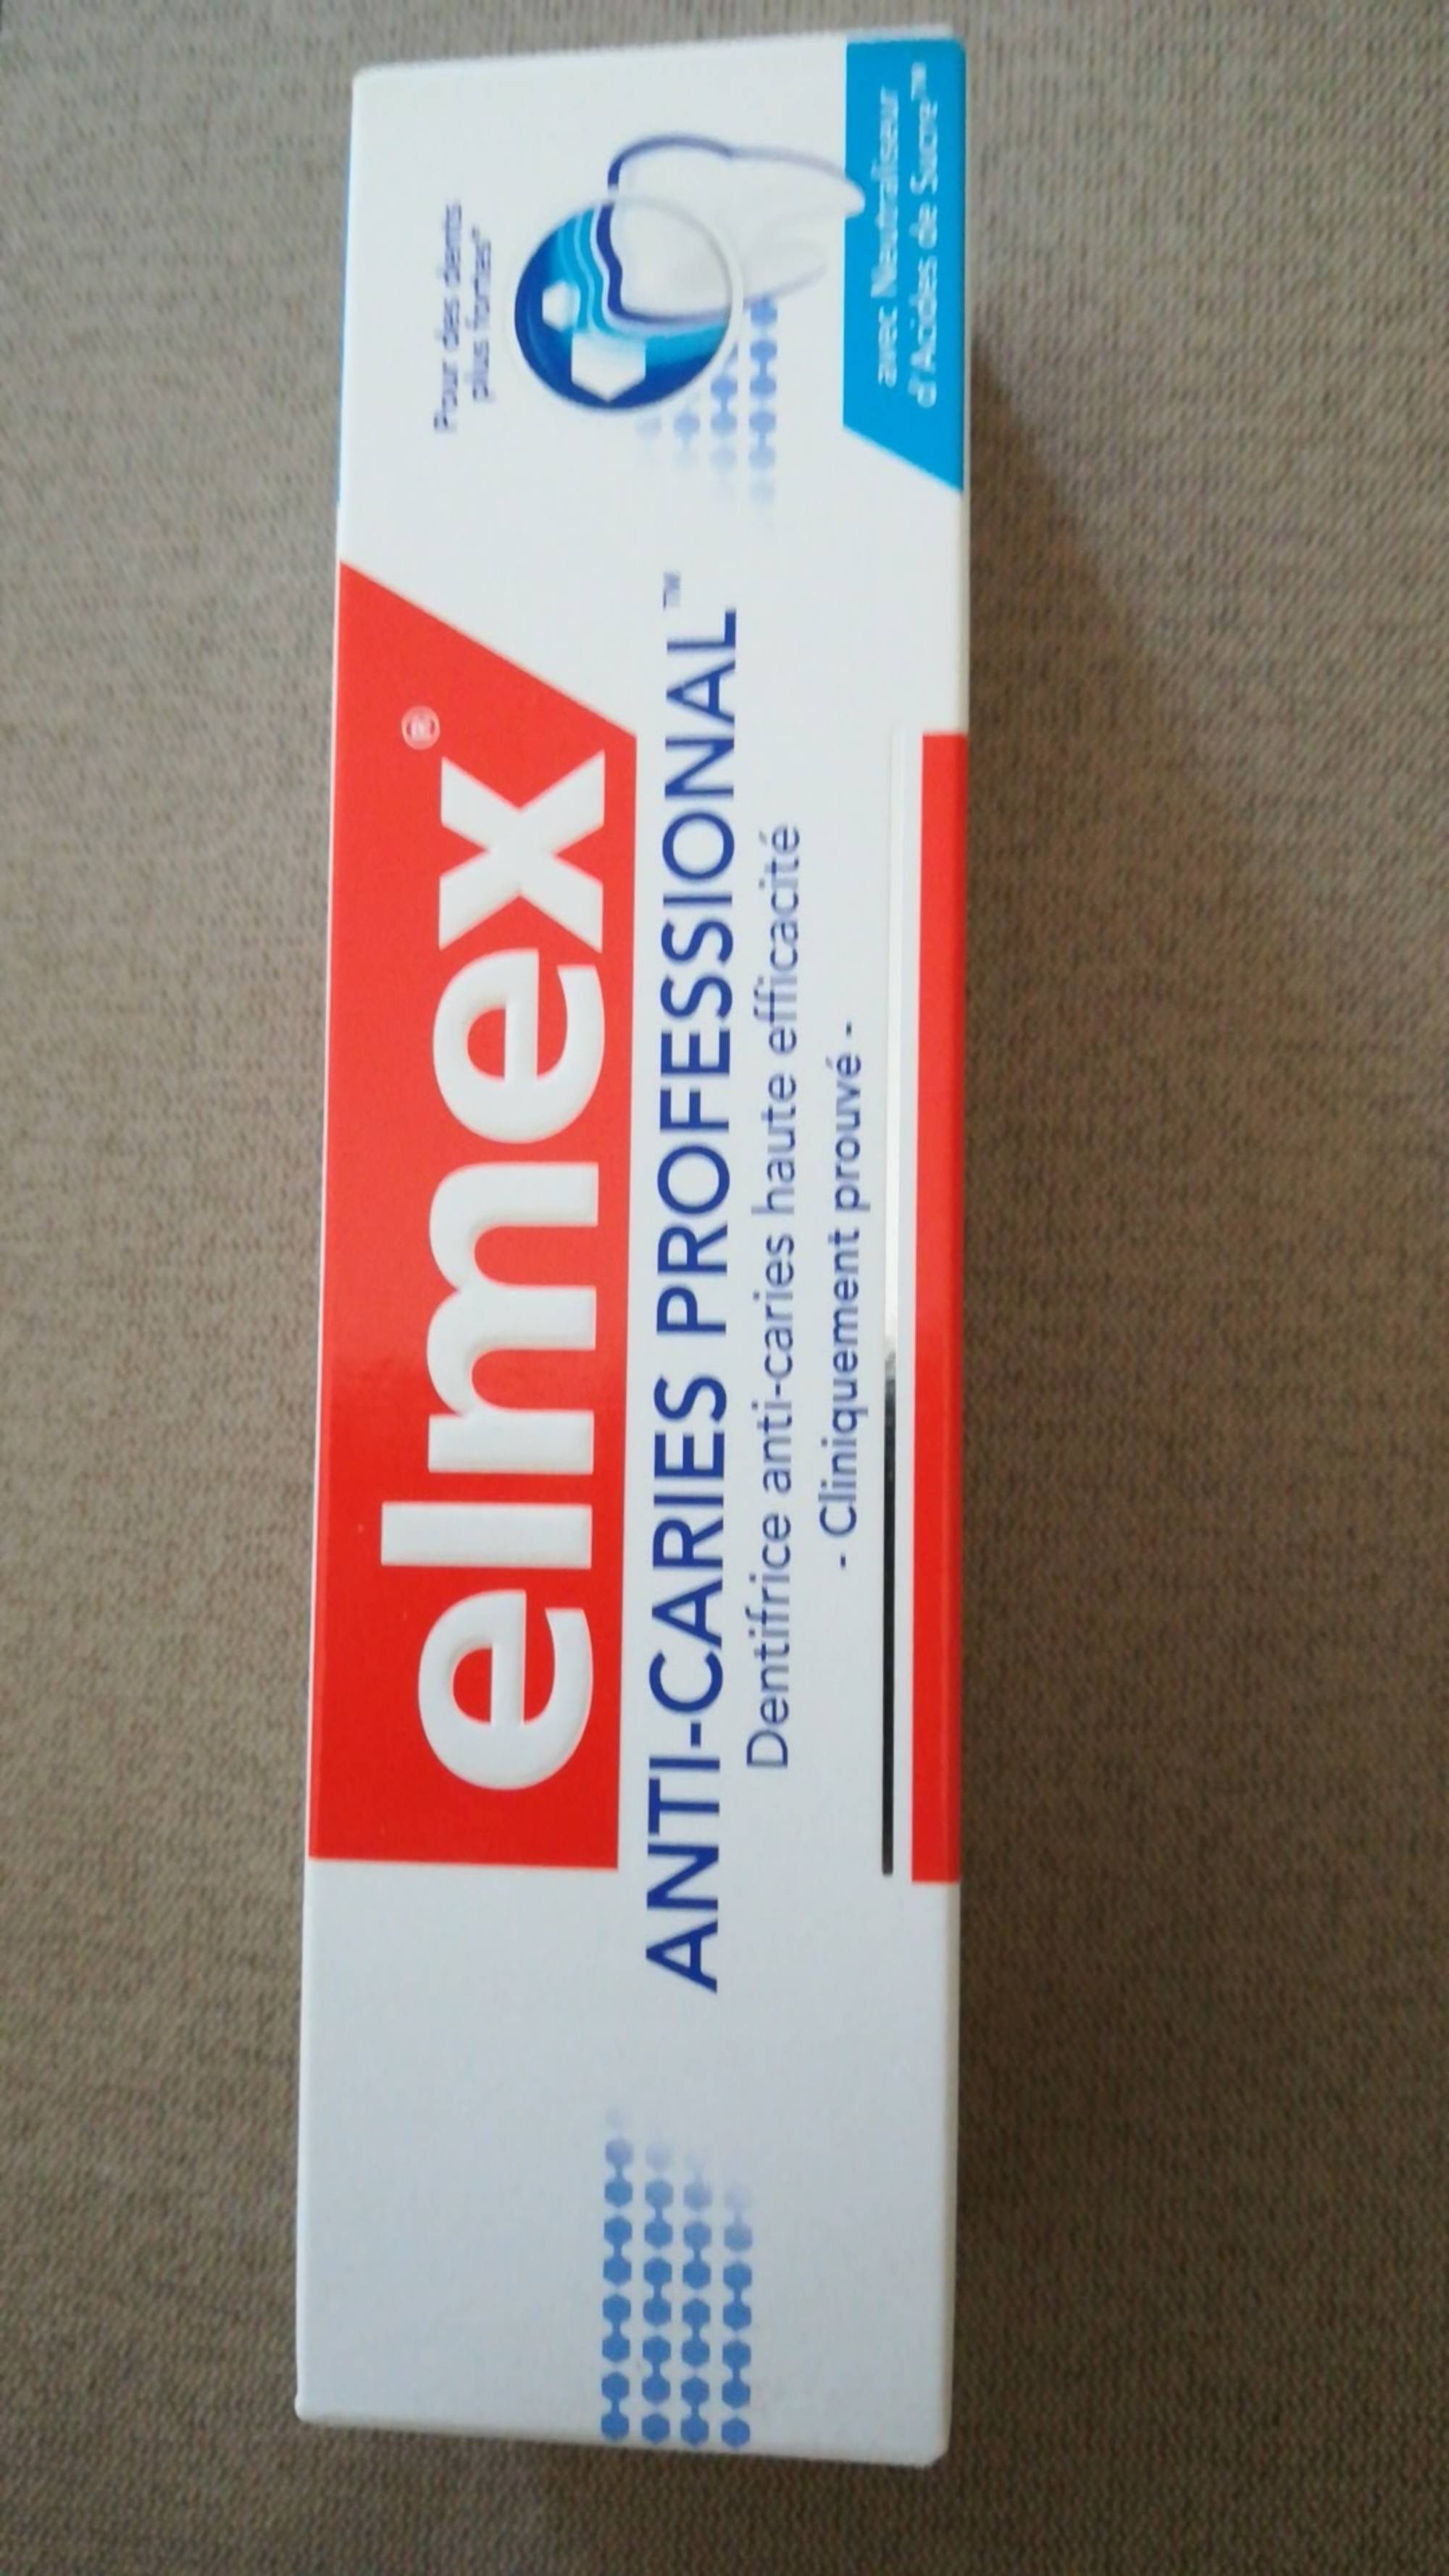 ELMEX - Anti-caries professional - Dentifrice anti-caries haute efficacité